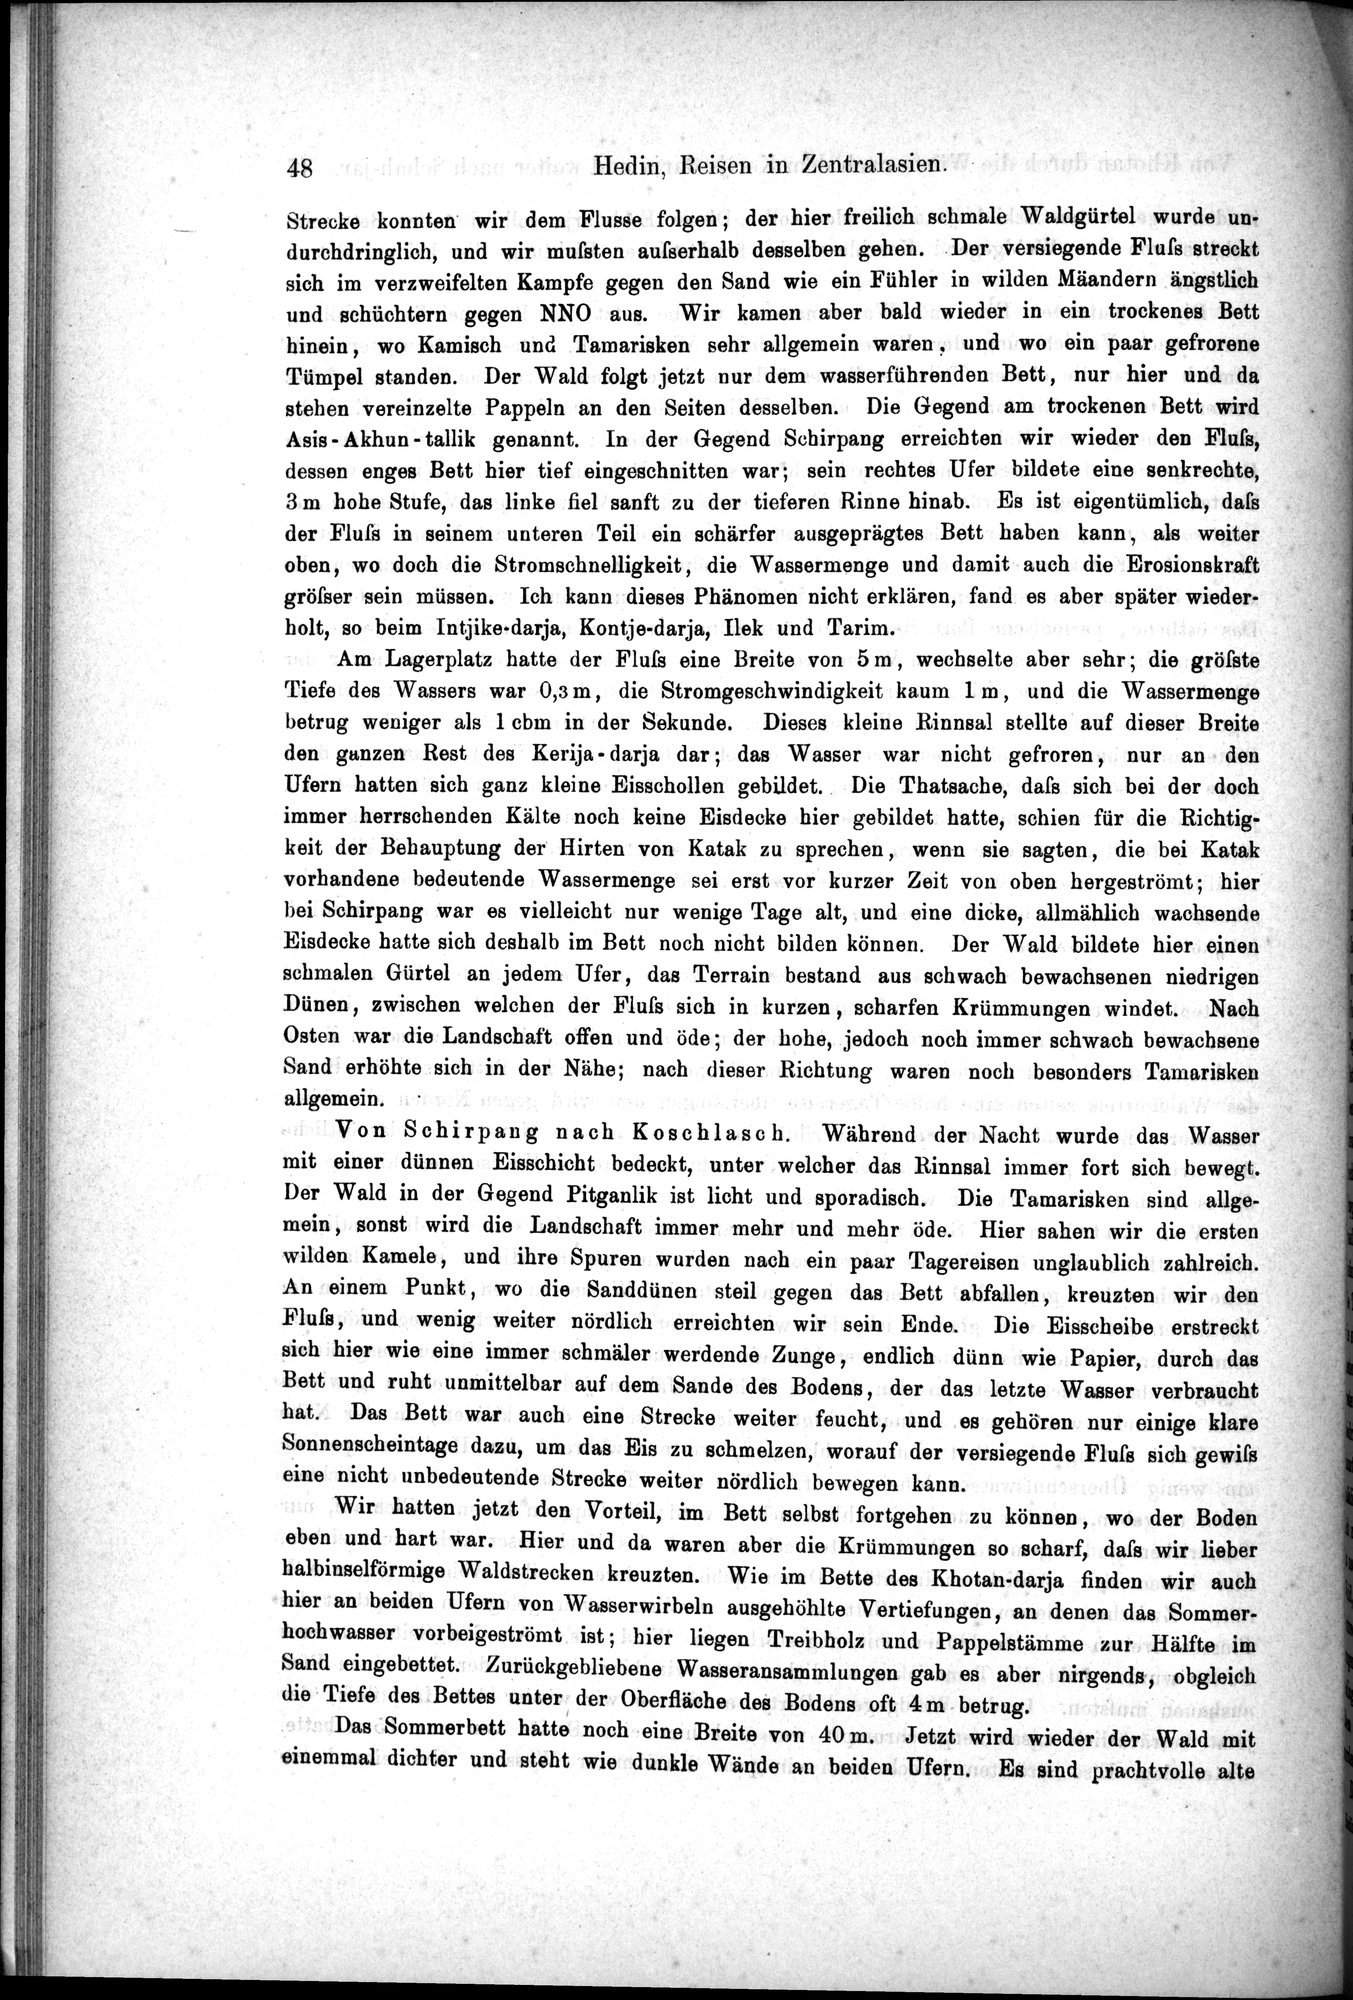 Die Geographische-Wissenschaftlichen Ergebnisse meiner Reisen in Zentralasien, 1894-1897 : vol.1 / Page 60 (Grayscale High Resolution Image)